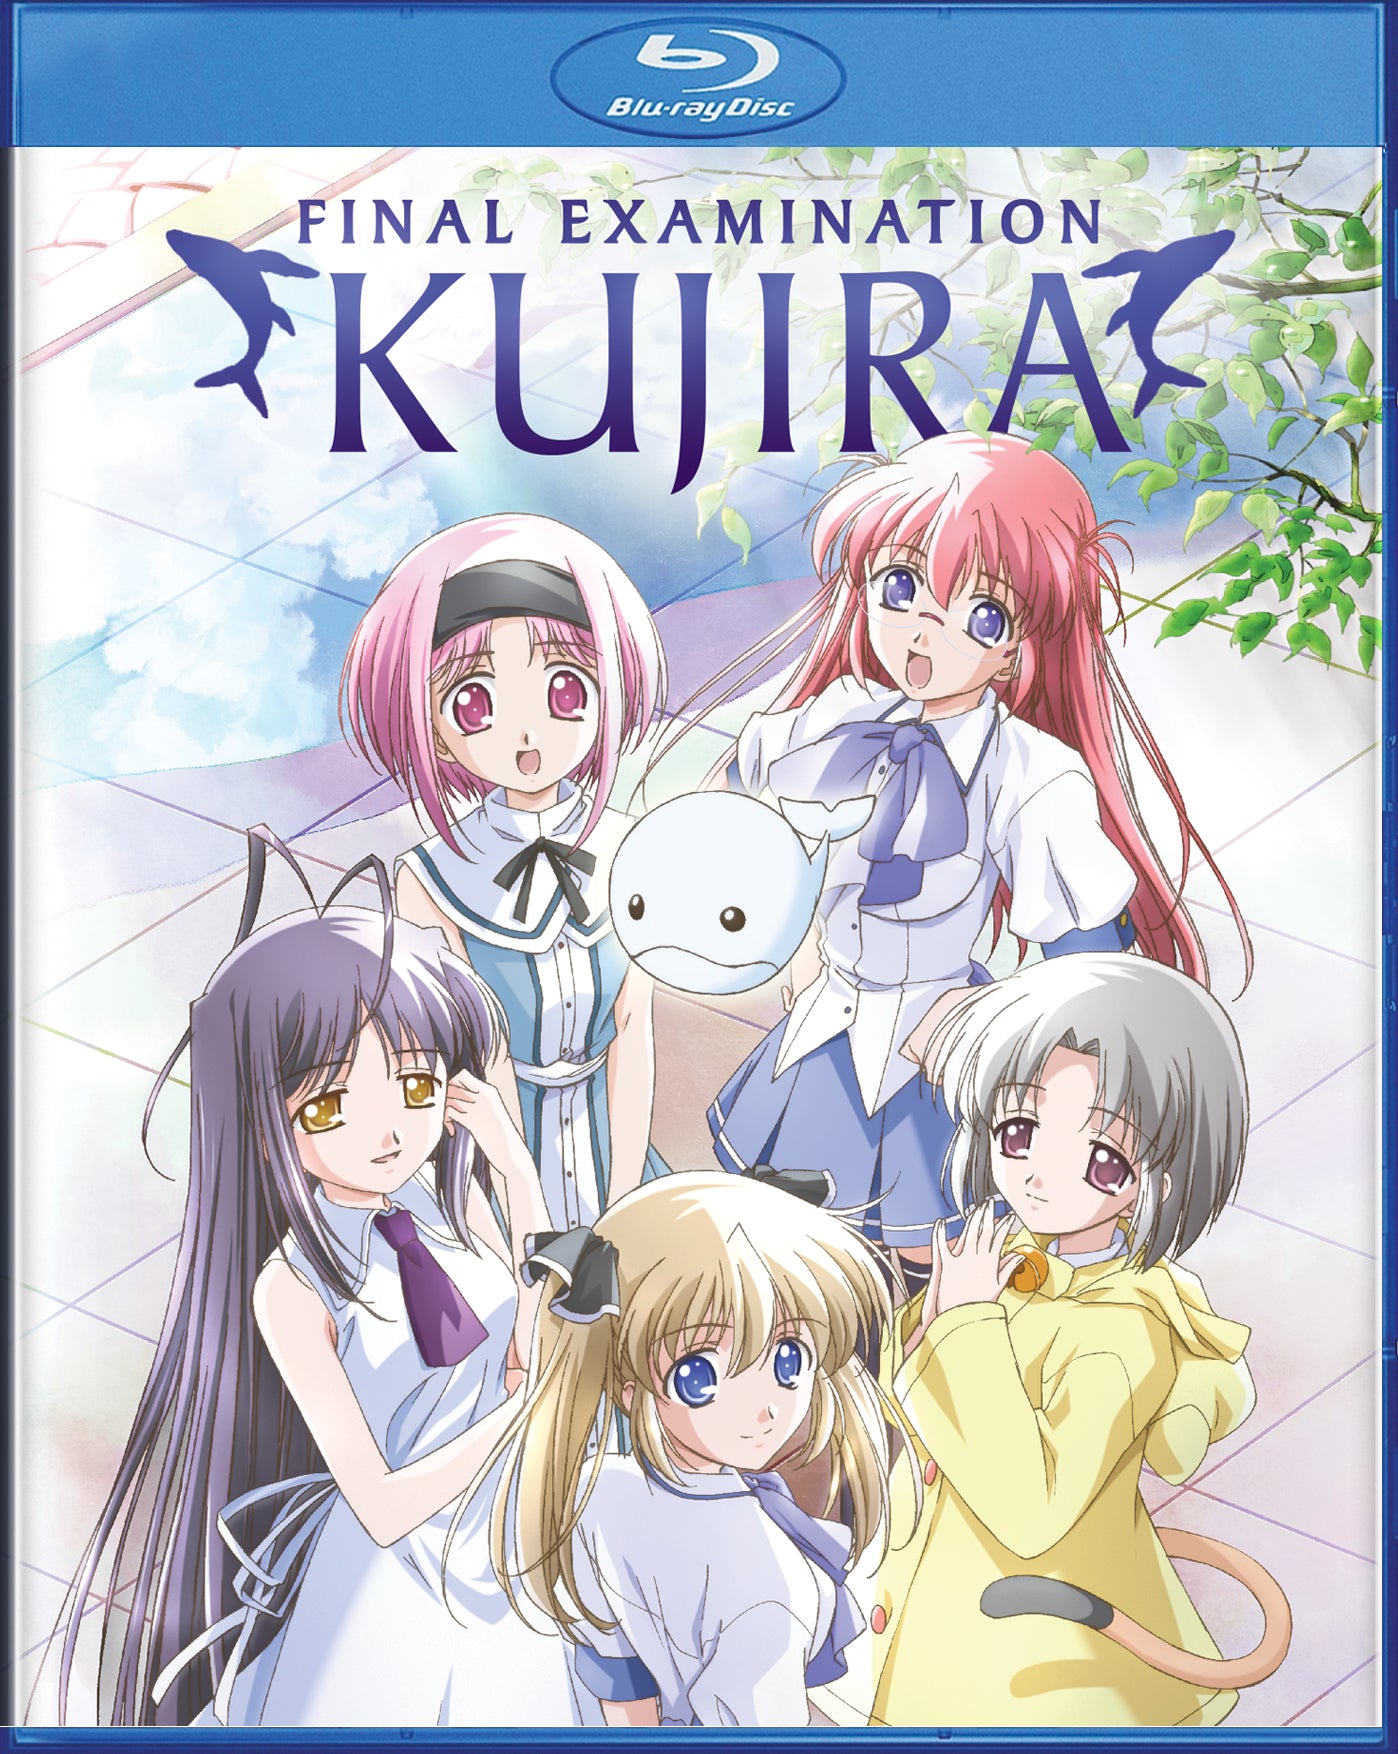 Final Examination Kujira [BD]